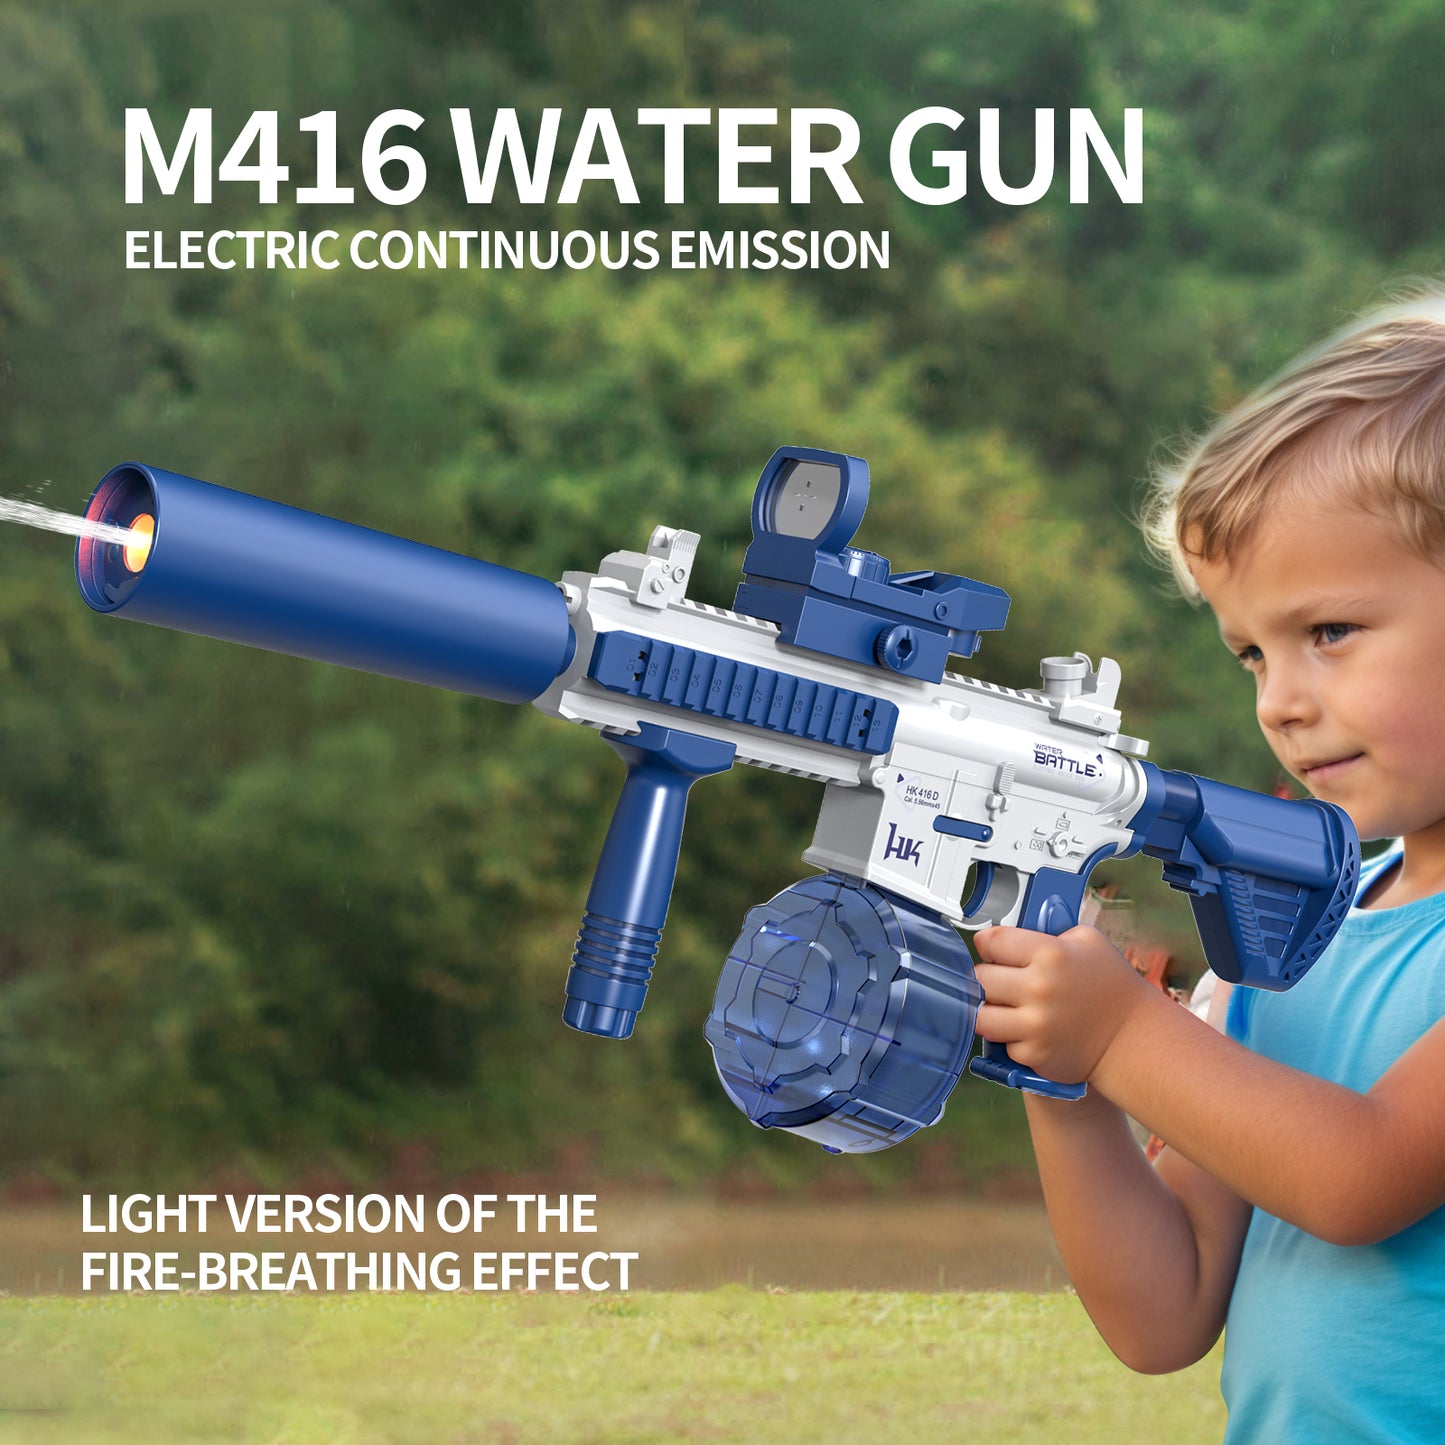 M416 Water Gun - LIGHT VERSION